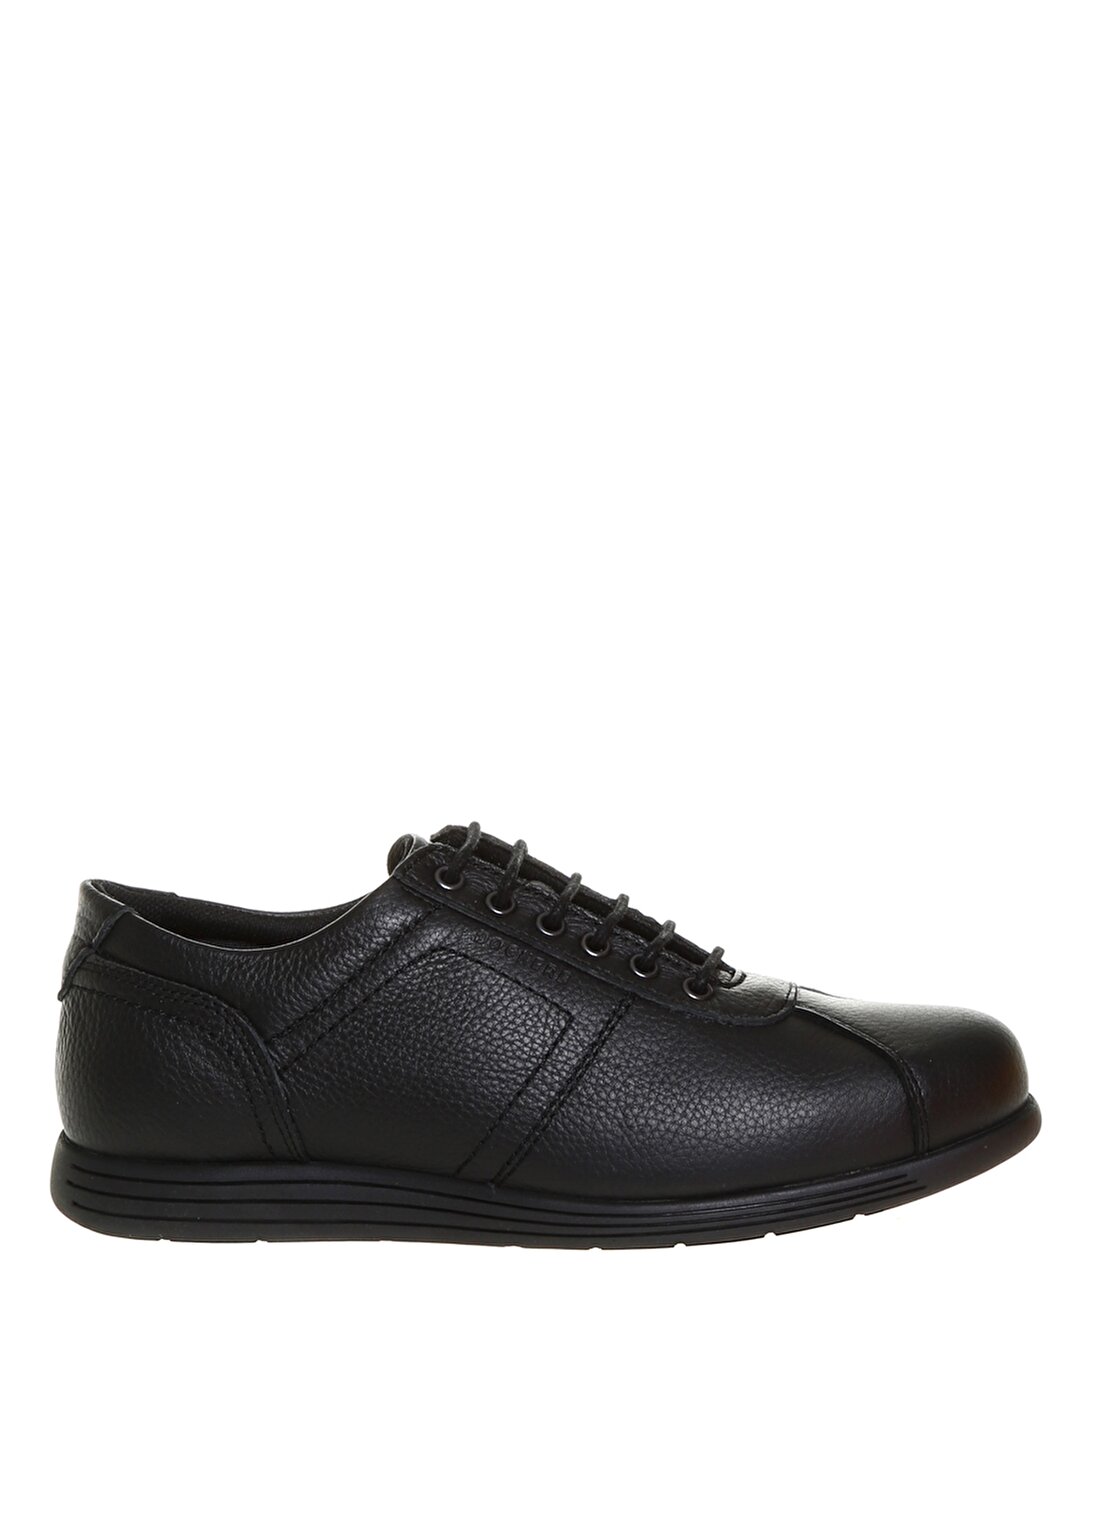 Dockers Erkek Deri Siyah Klasik Ayakkabı